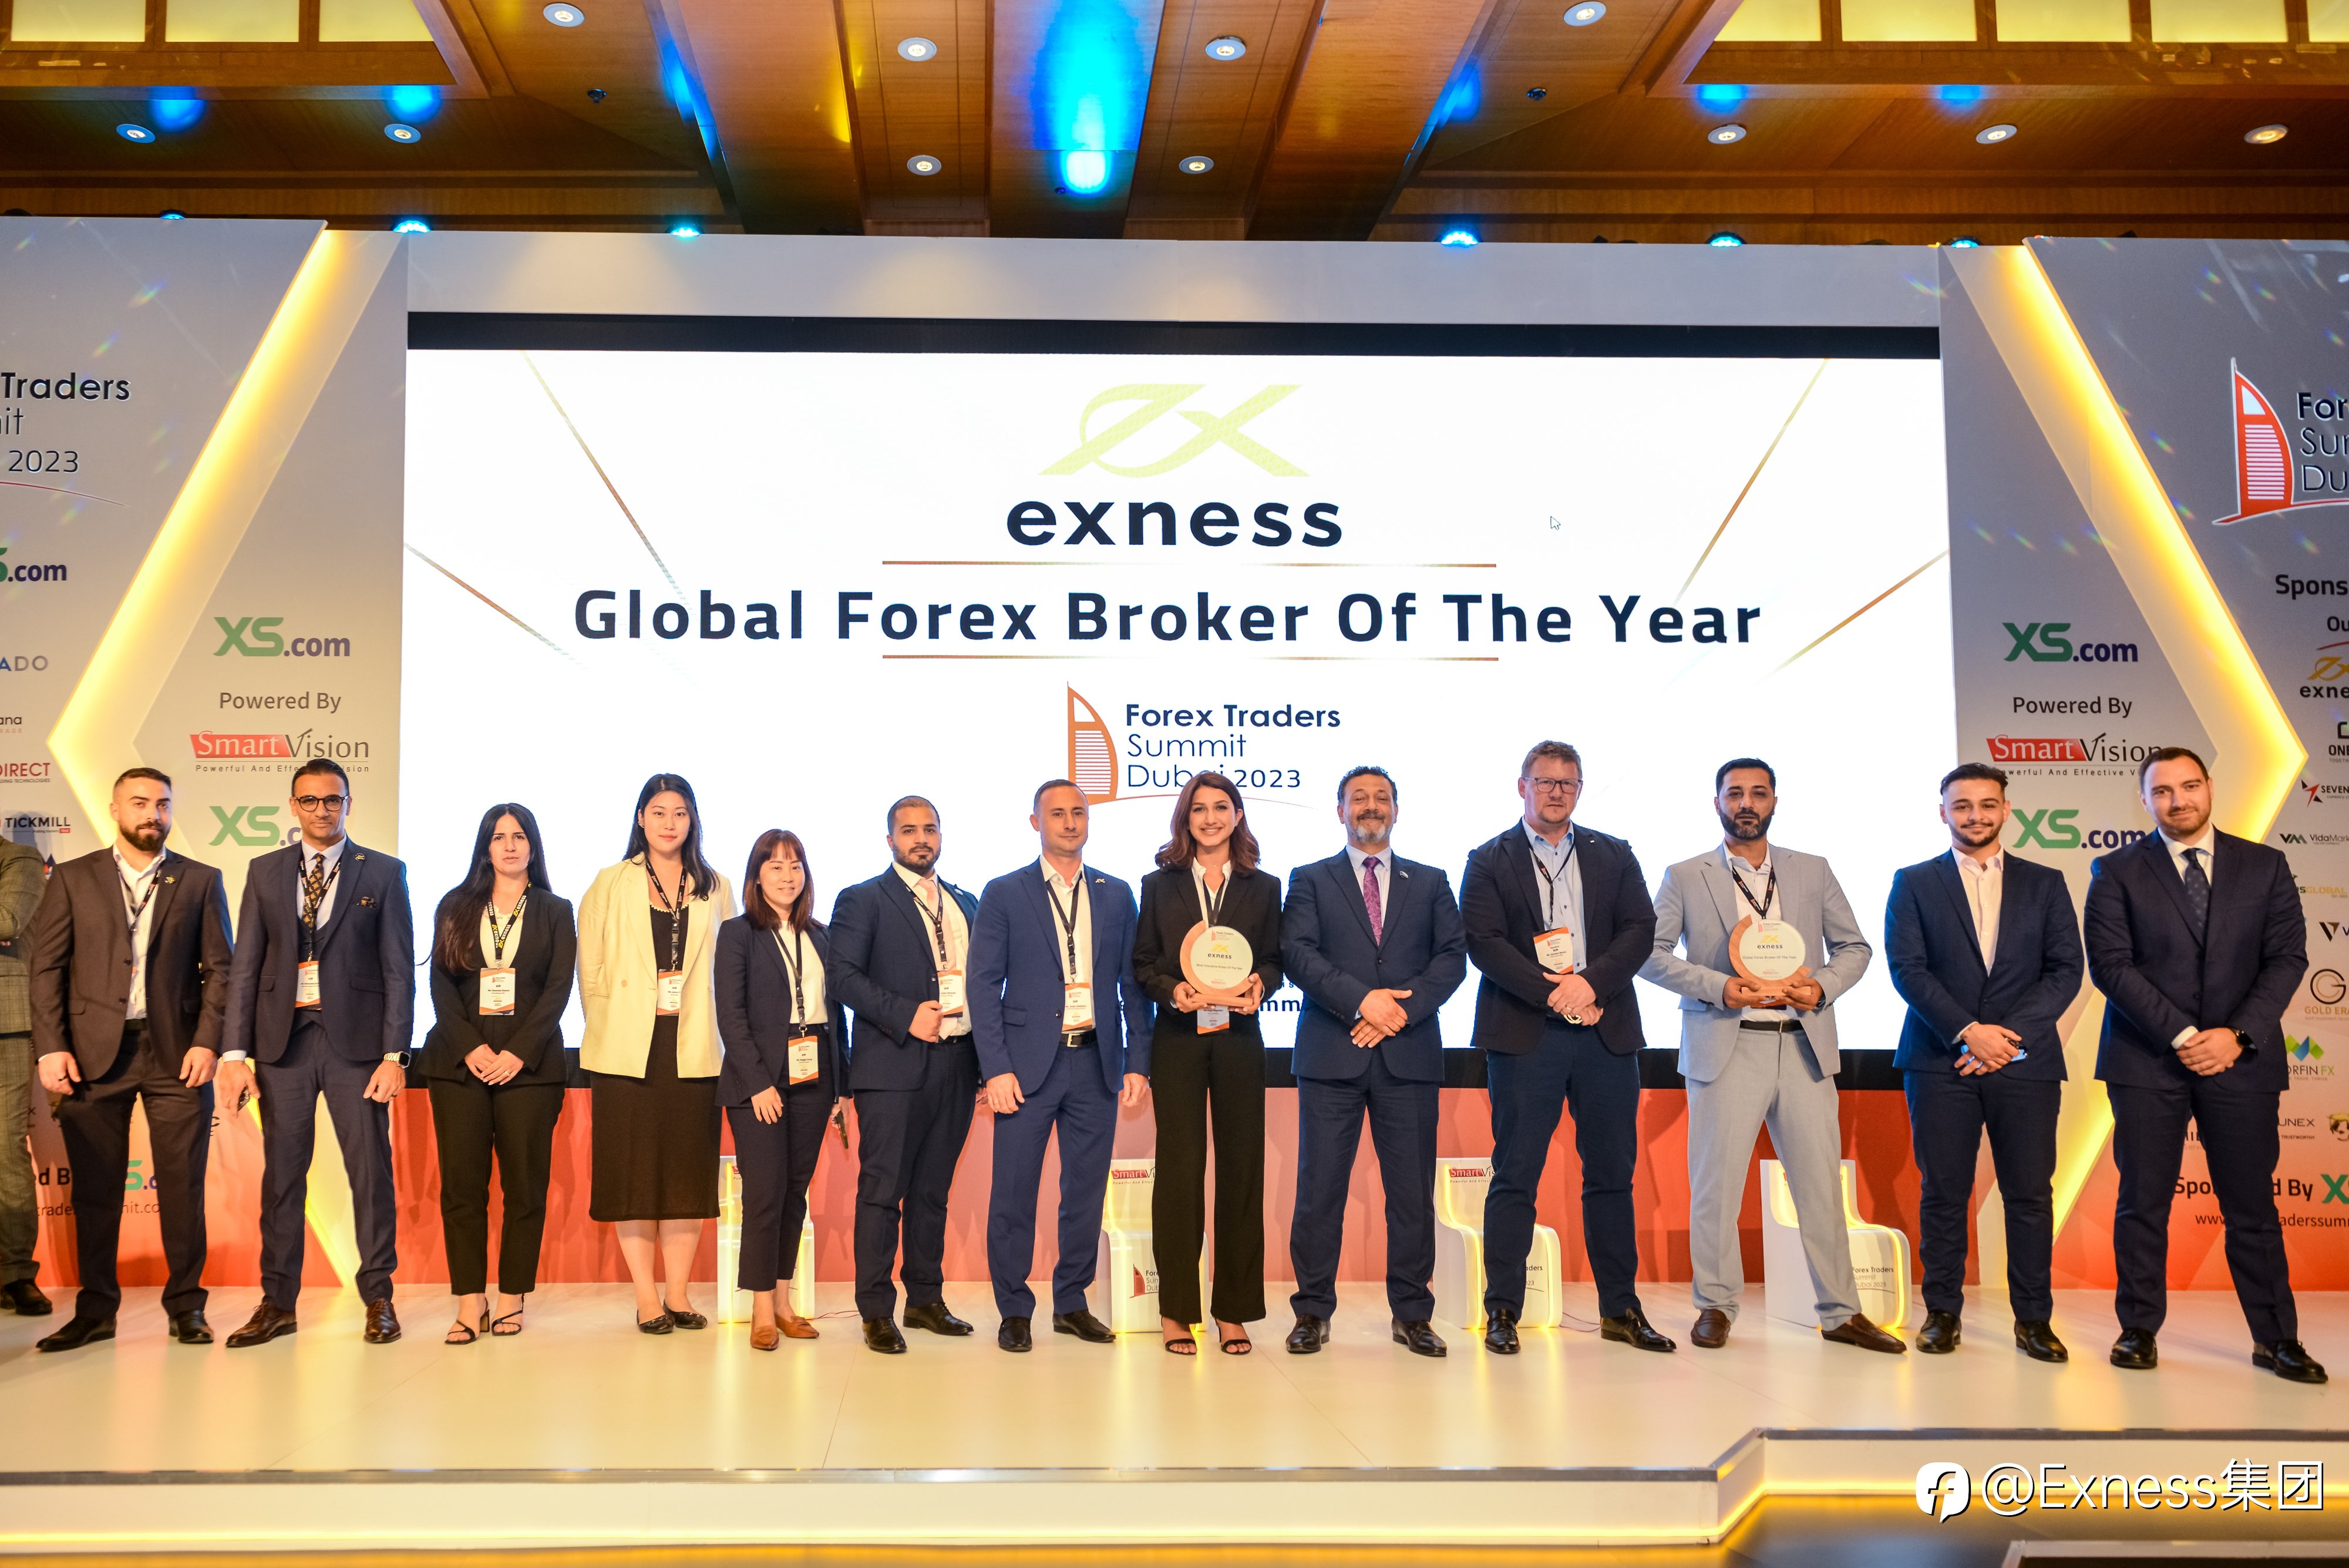 Exness 荣获“年度全球经纪商”和“年度最具创新经纪商”，巩固了其在多资产交易行业的领先地位。